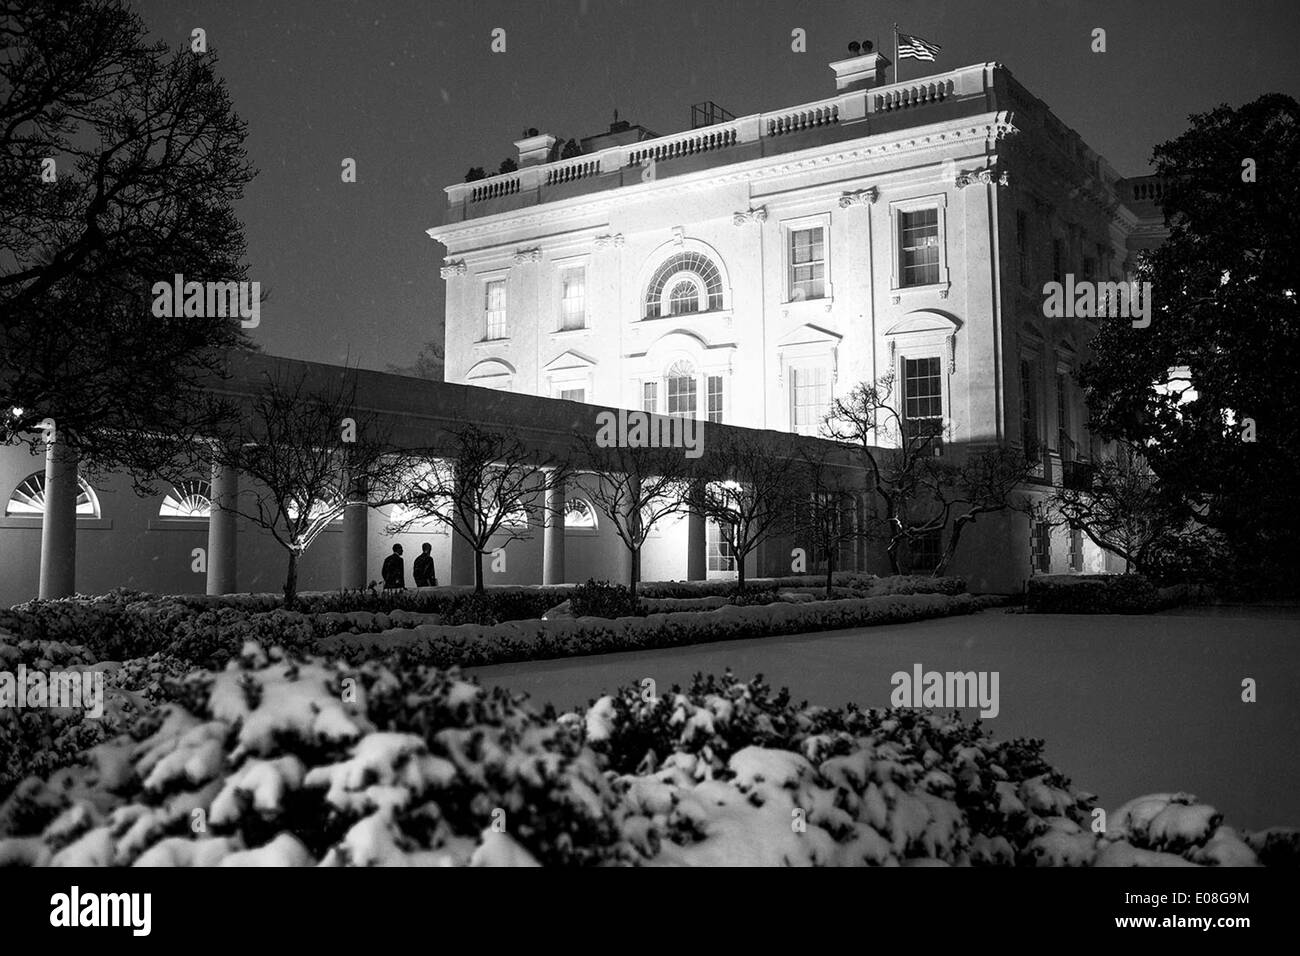 Le président américain Barack Obama se rend à la résidence avec le chef de cabinet Denis McDonough après une journée de réunions dans l'aile ouest de la Maison Blanche sur une nuit de neige le 21 janvier 2014 à Washington, DC. Banque D'Images